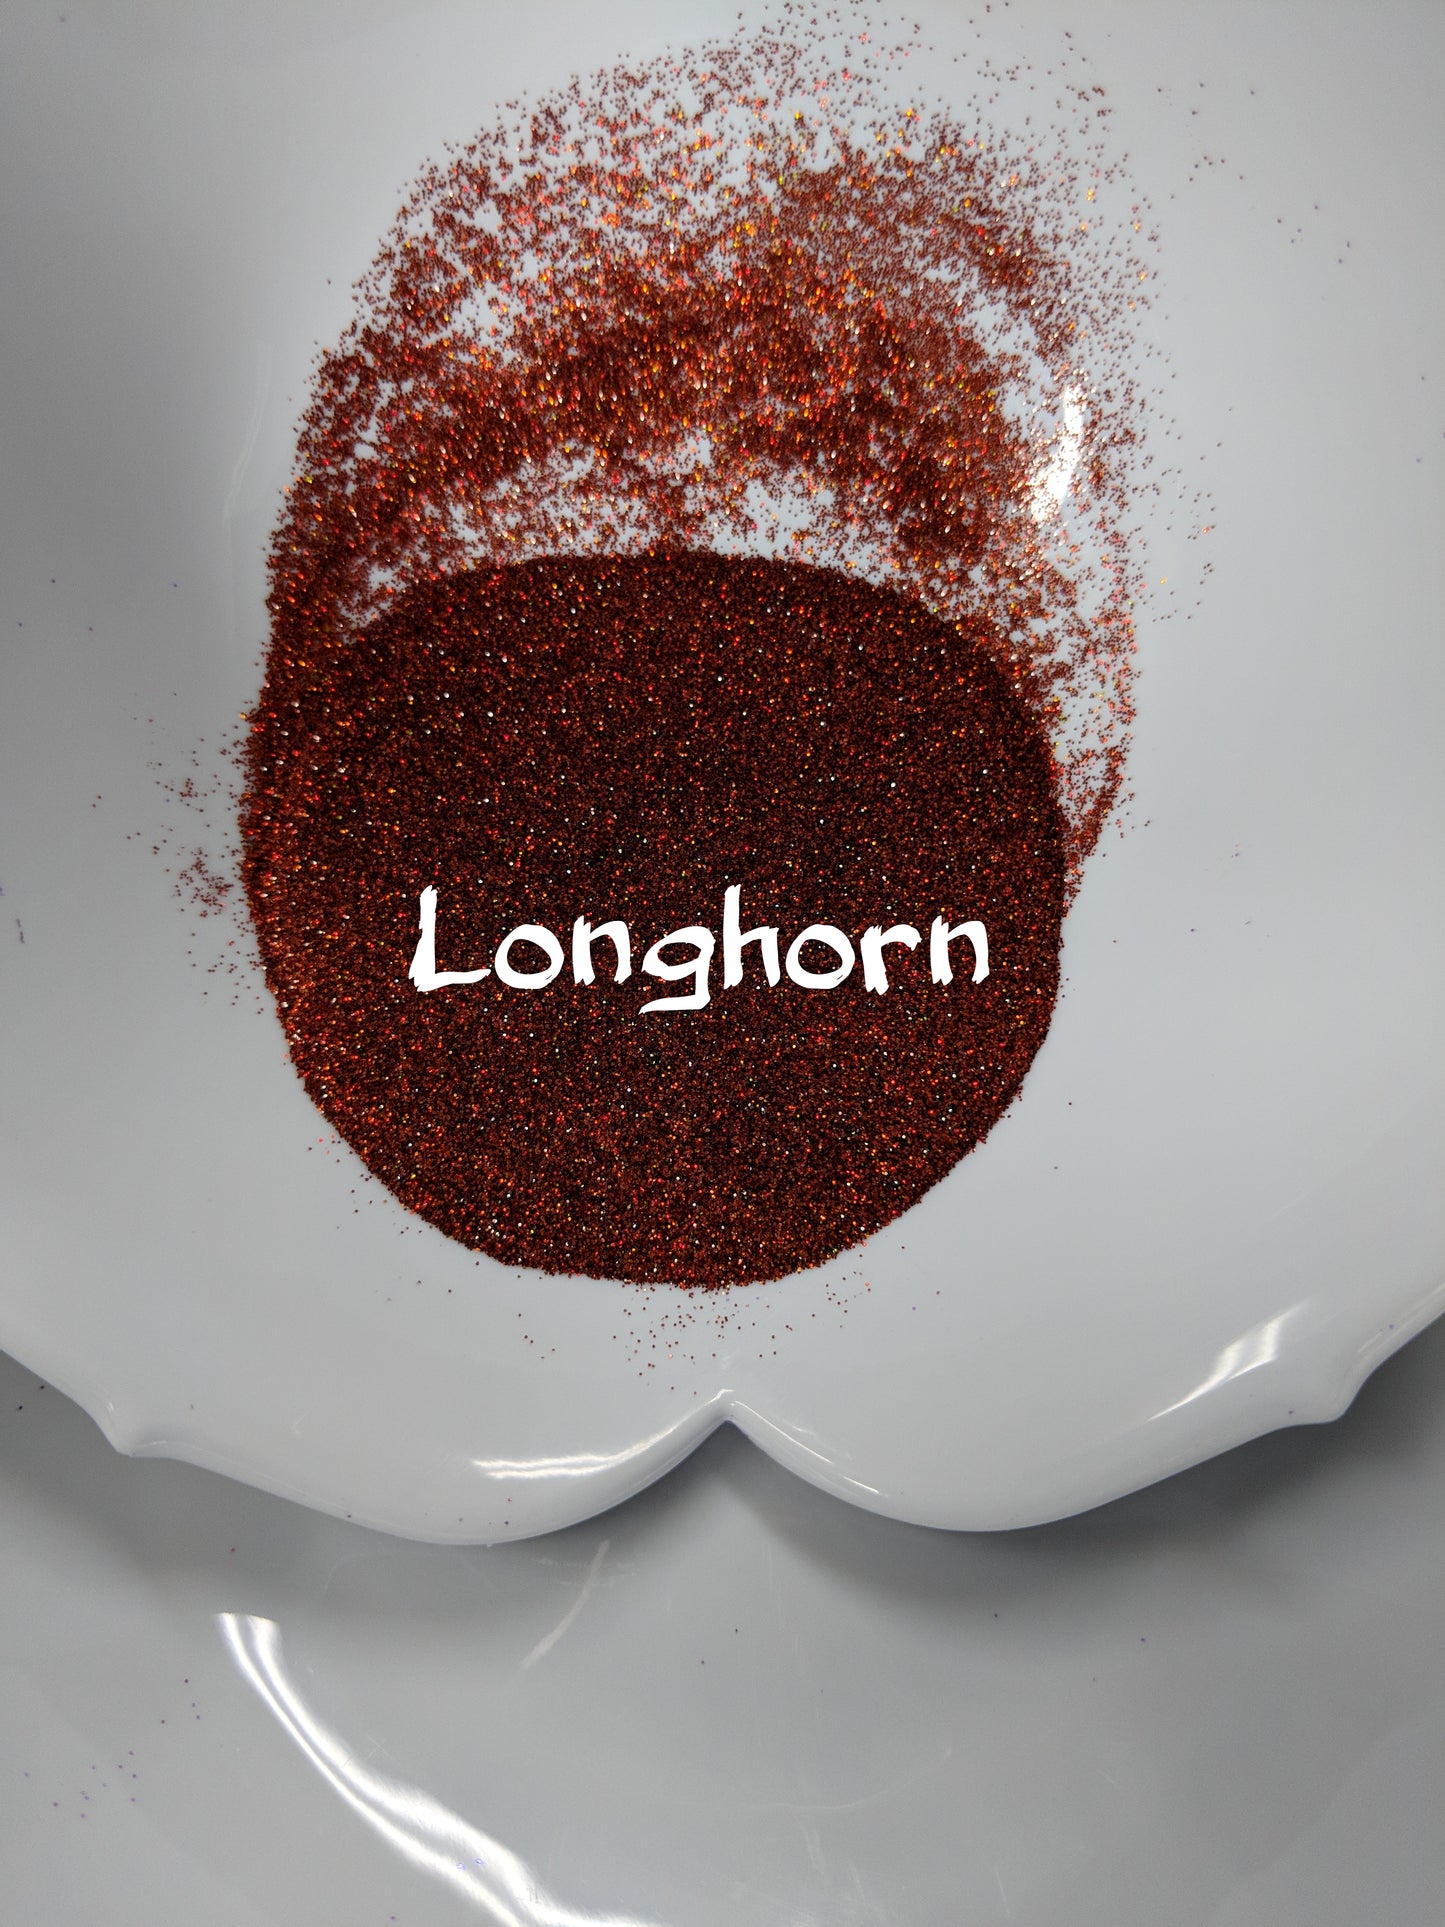 Longhorn